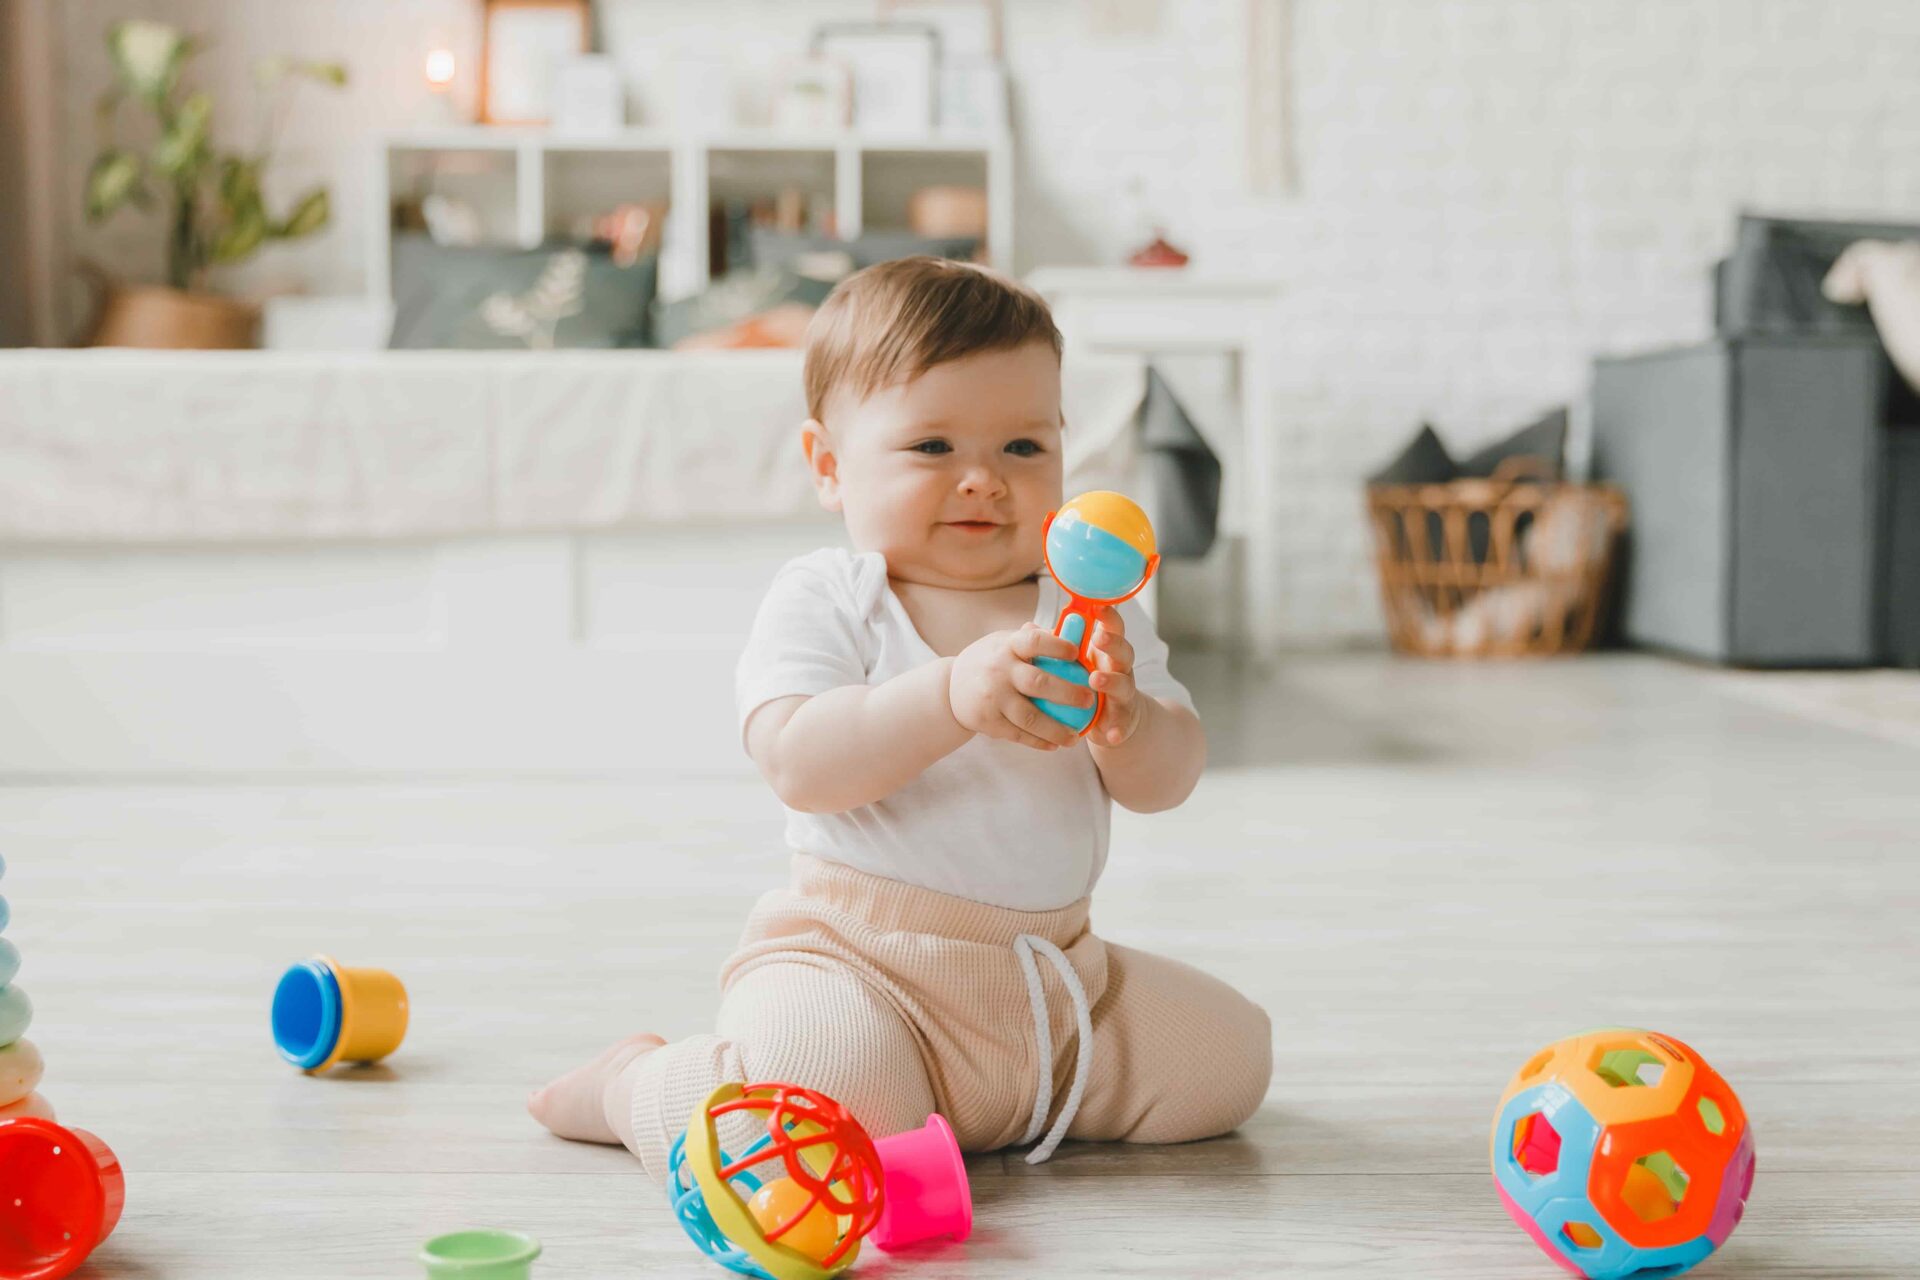 23 juguetes sensoriales para estimular el desarrollo y aprendizaje